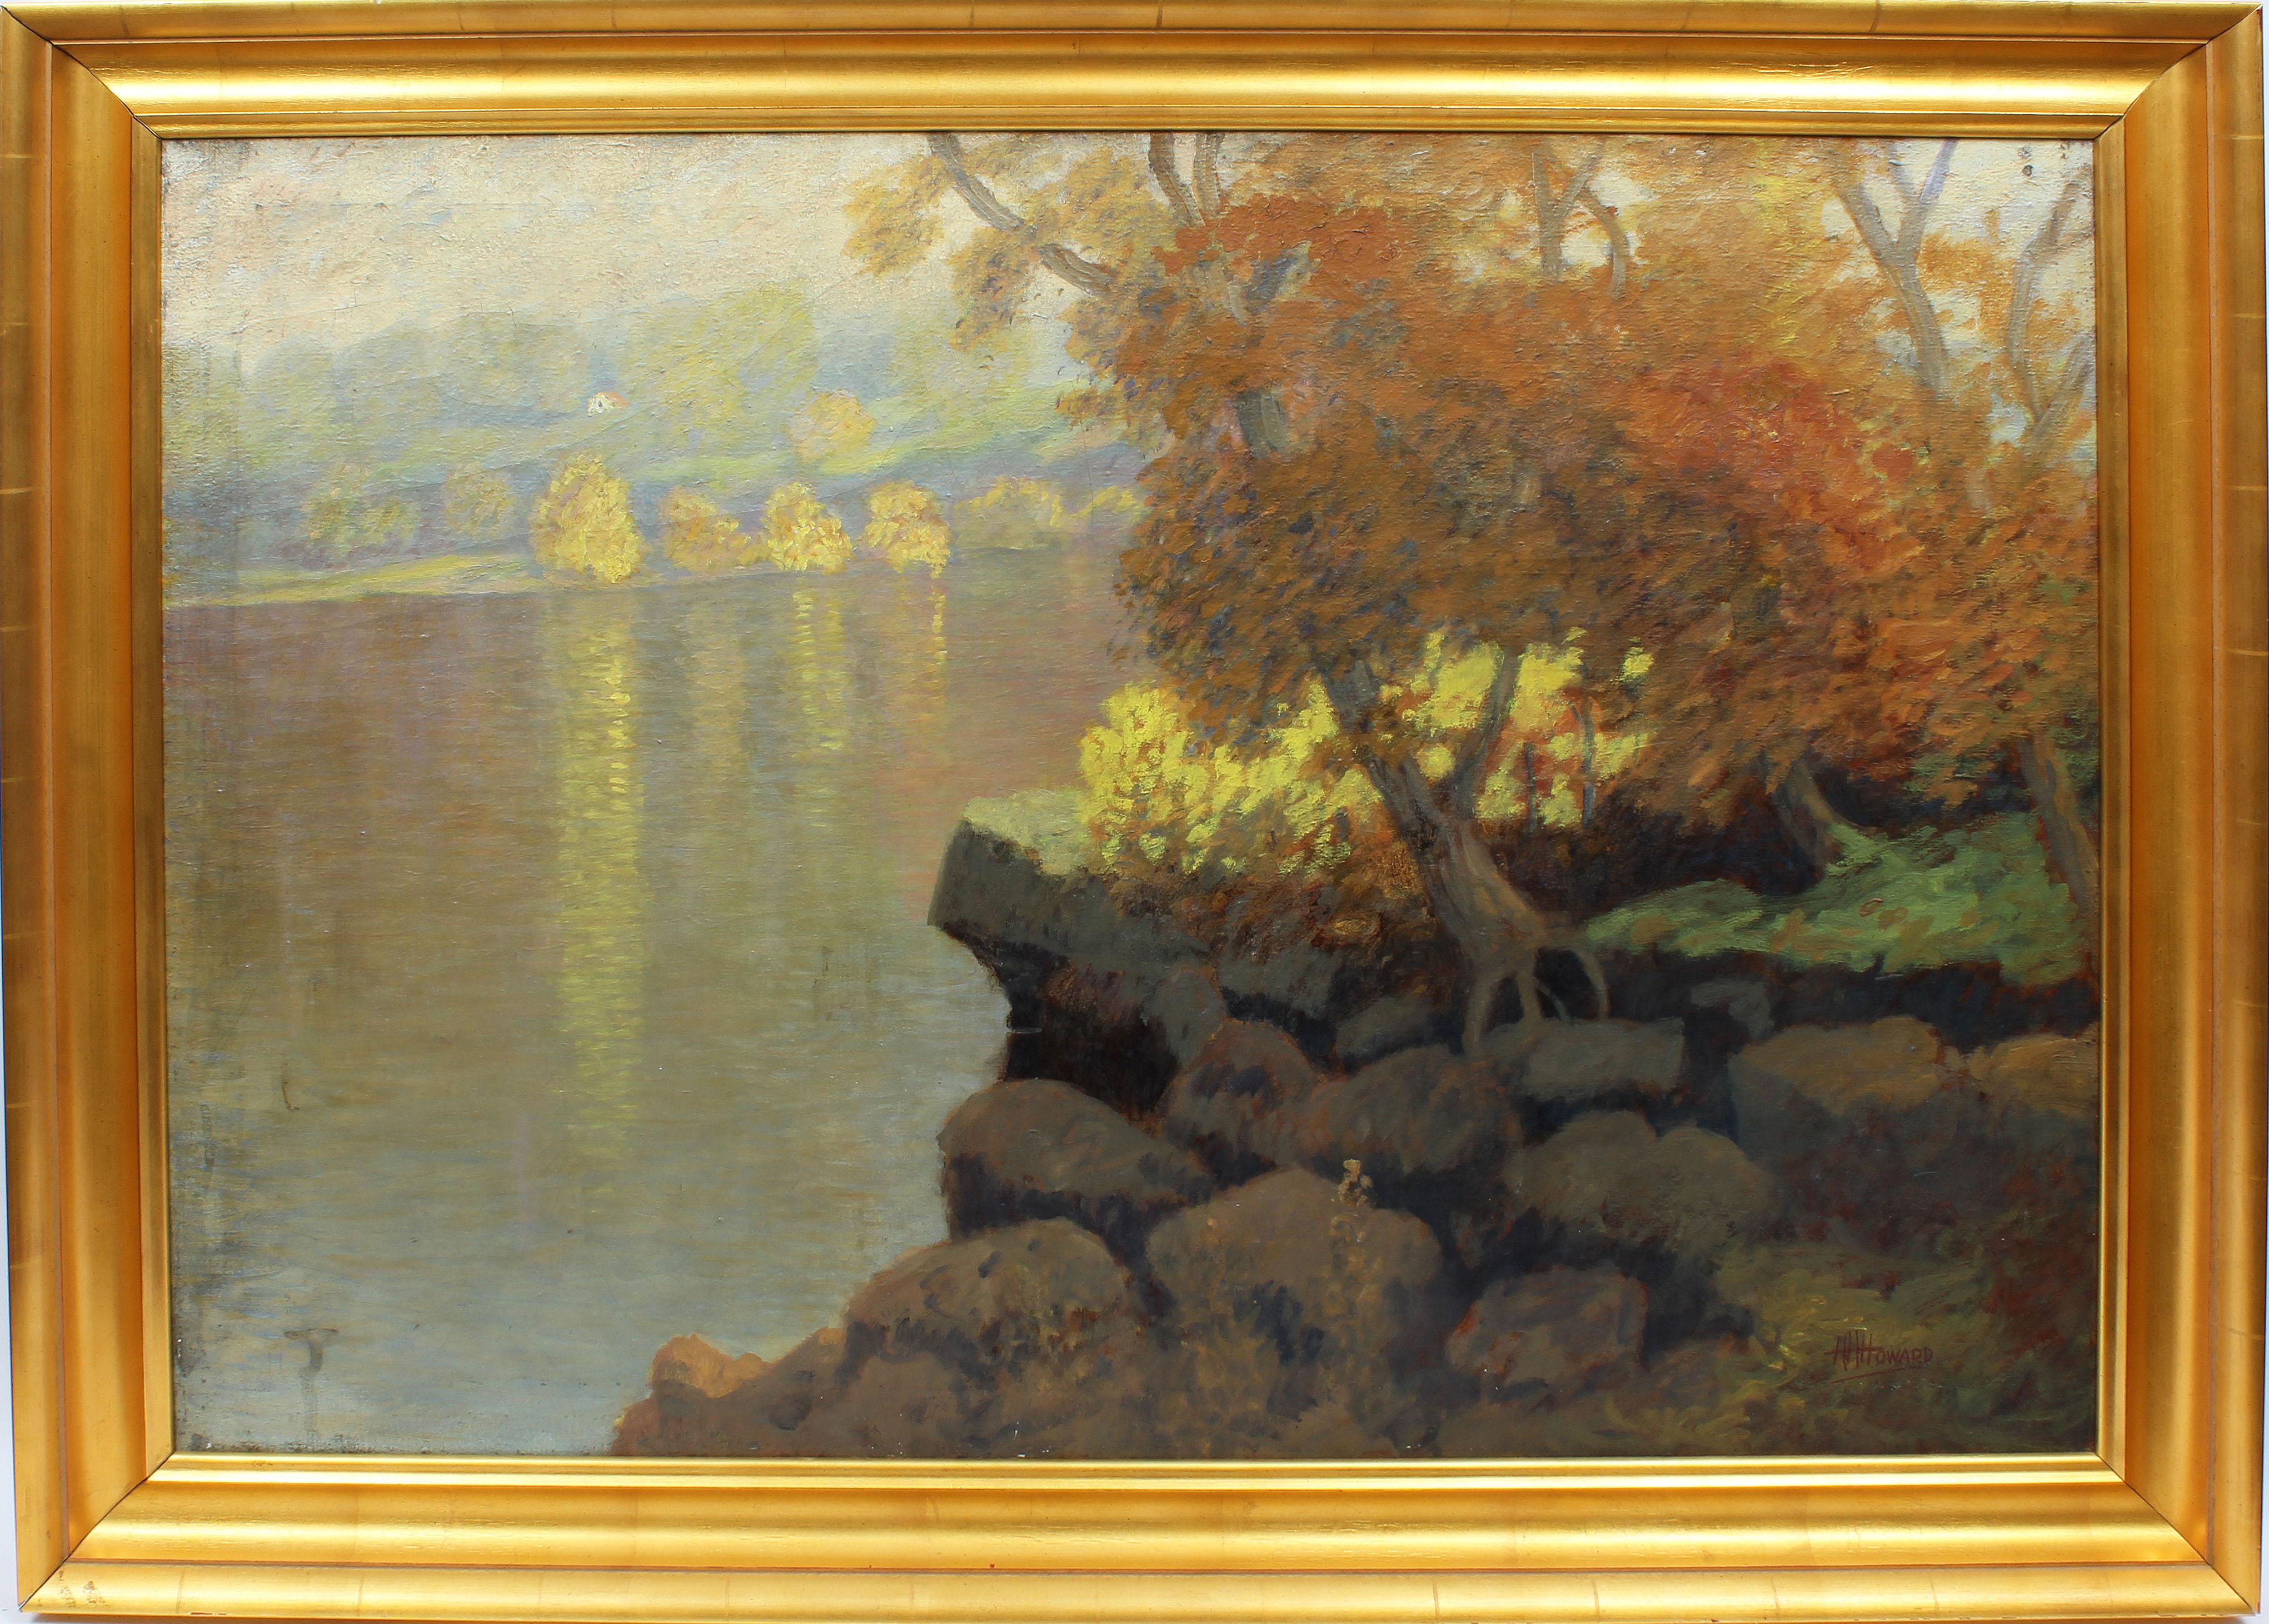 Hugh Huntington Howard Landscape Painting - Large Antique American Impressionist Signed Summer River Landscape Oil Painting